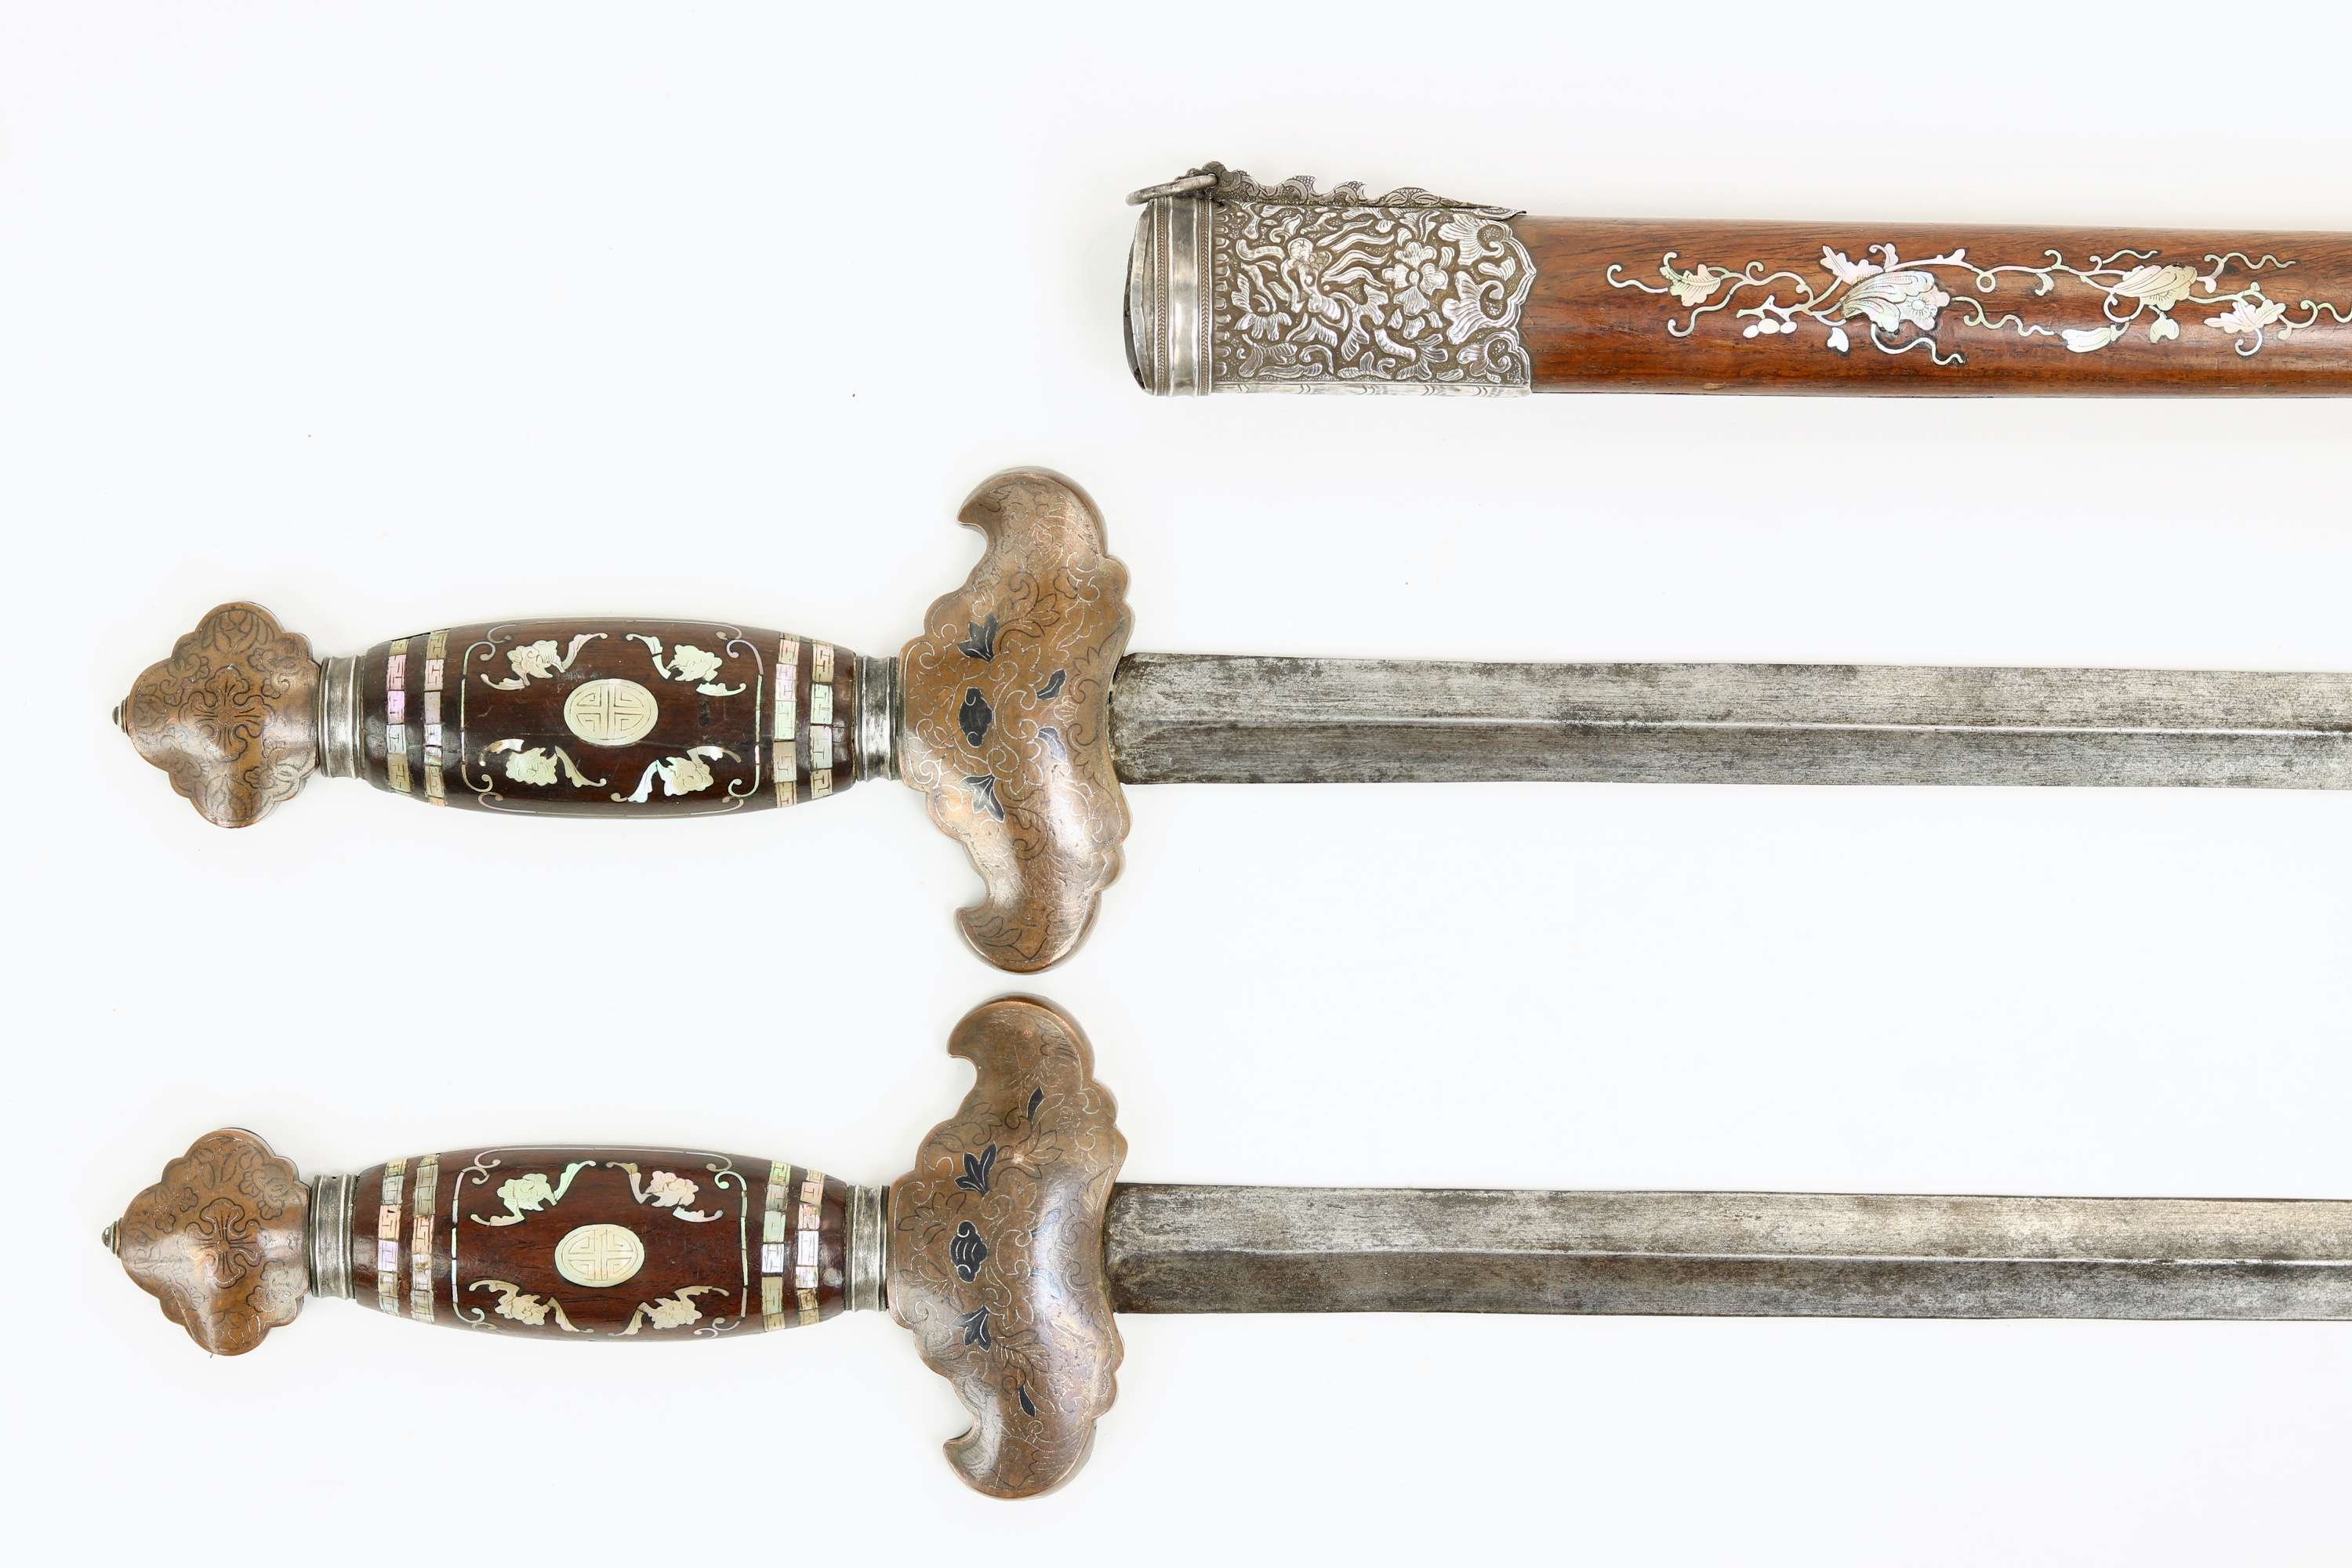 Vietnamese double swords